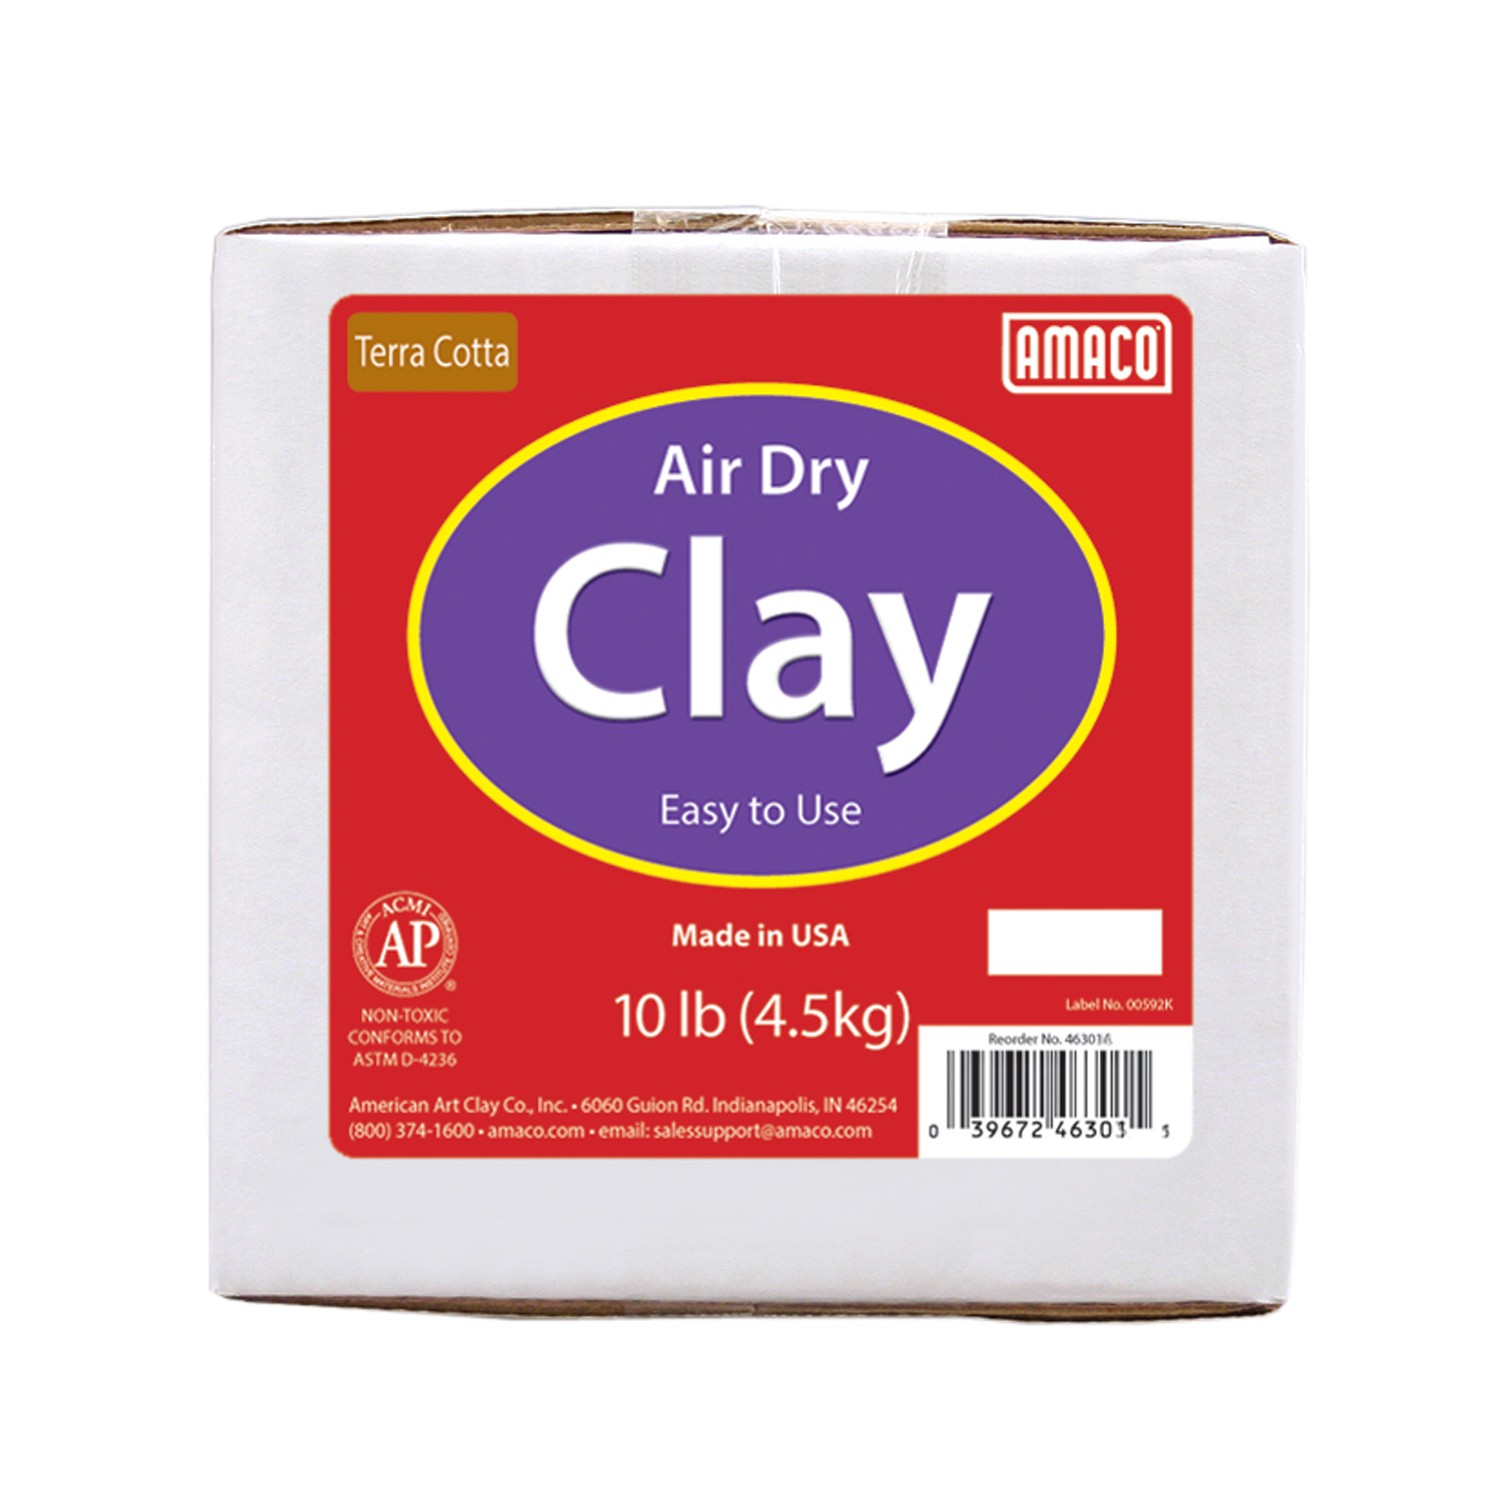 Air Dry Clay, Terra Cotta, 10 lbs